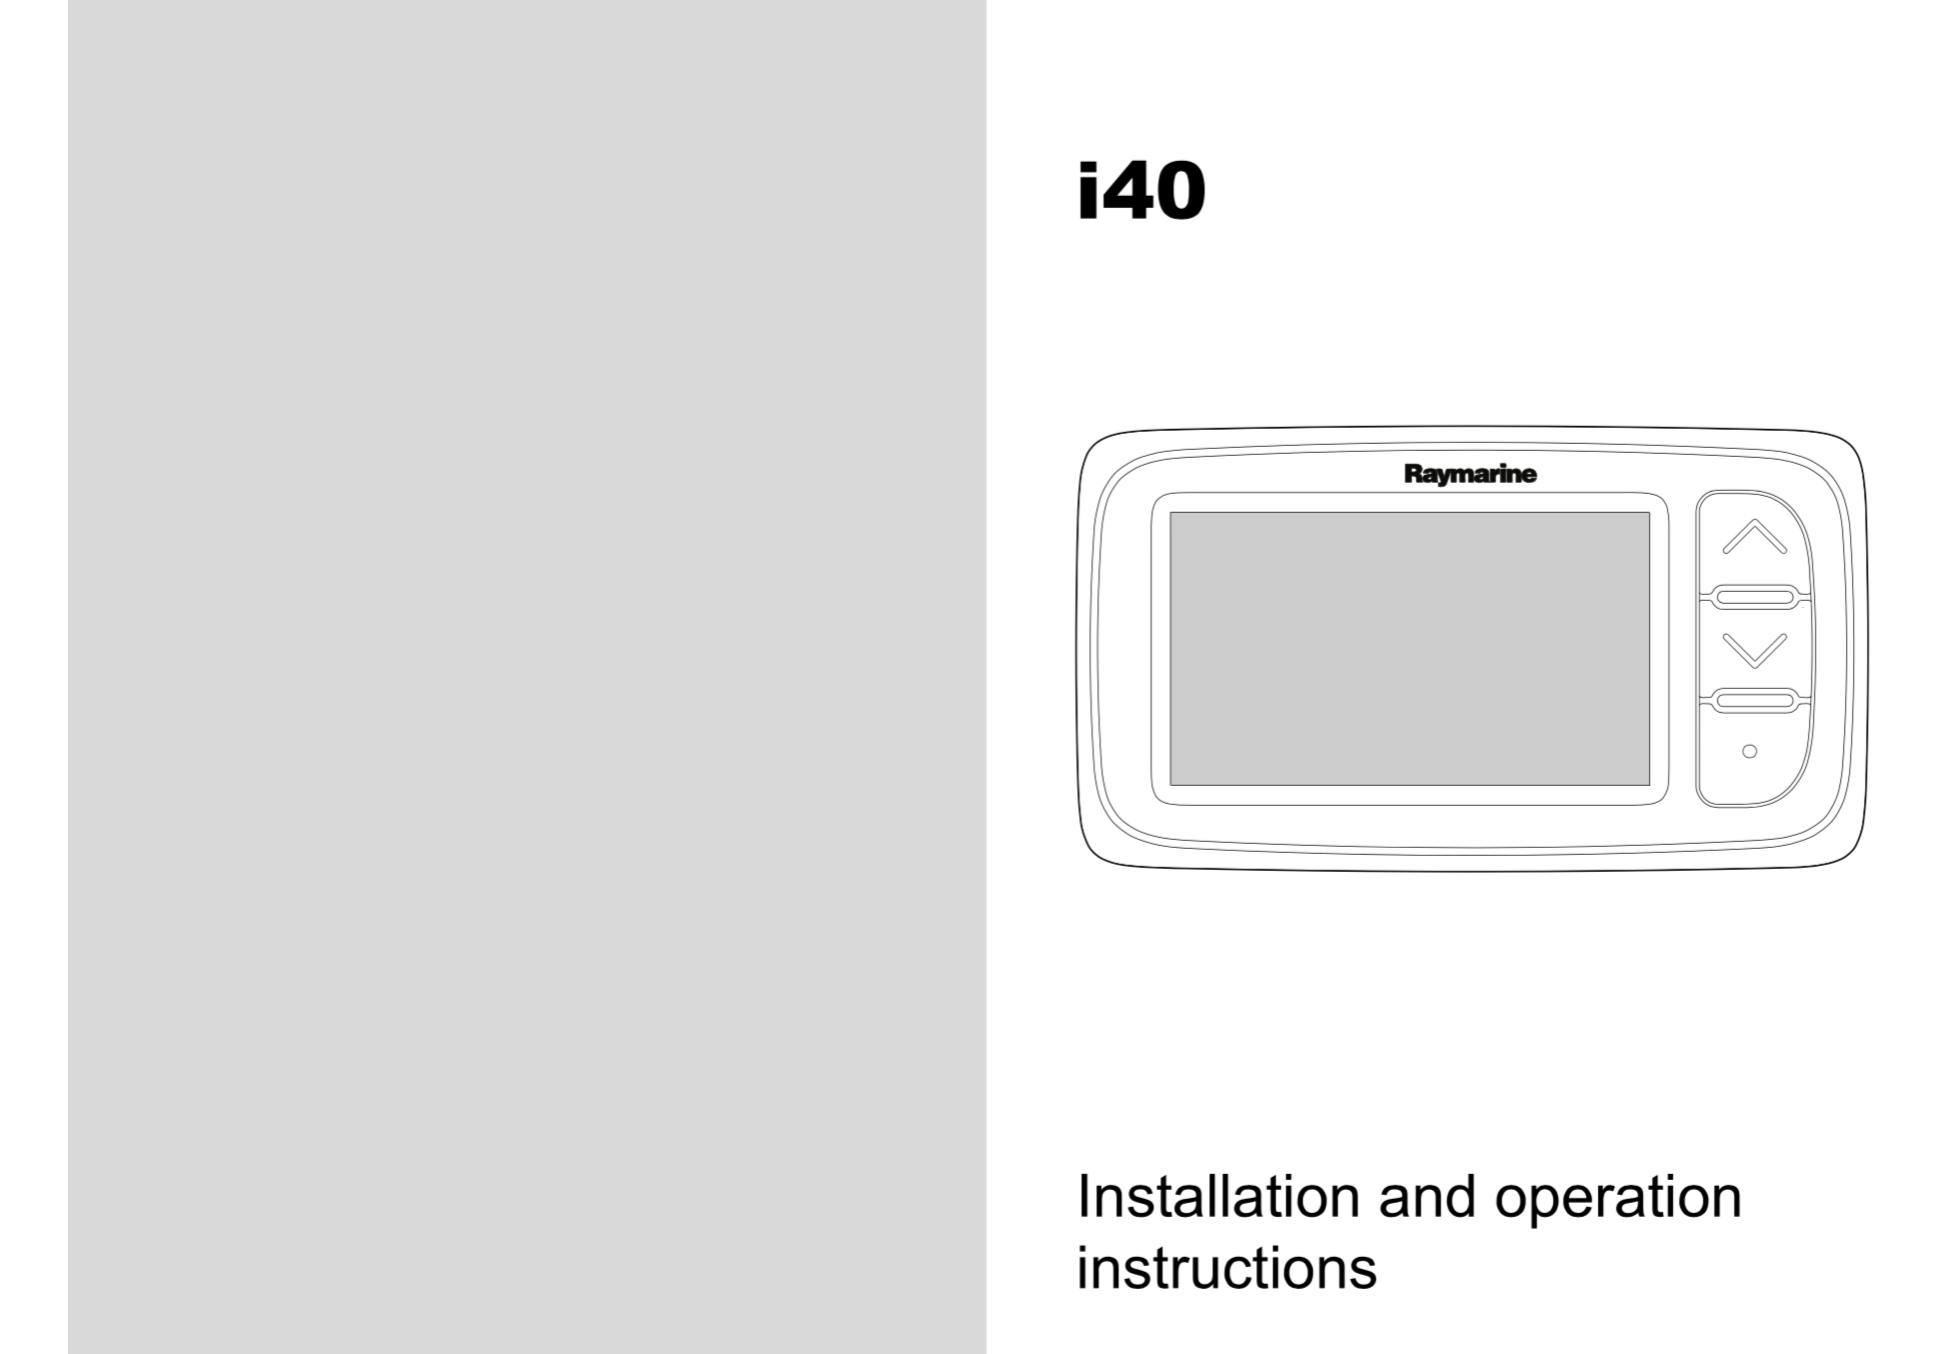 i40 instrument installation operation instructions